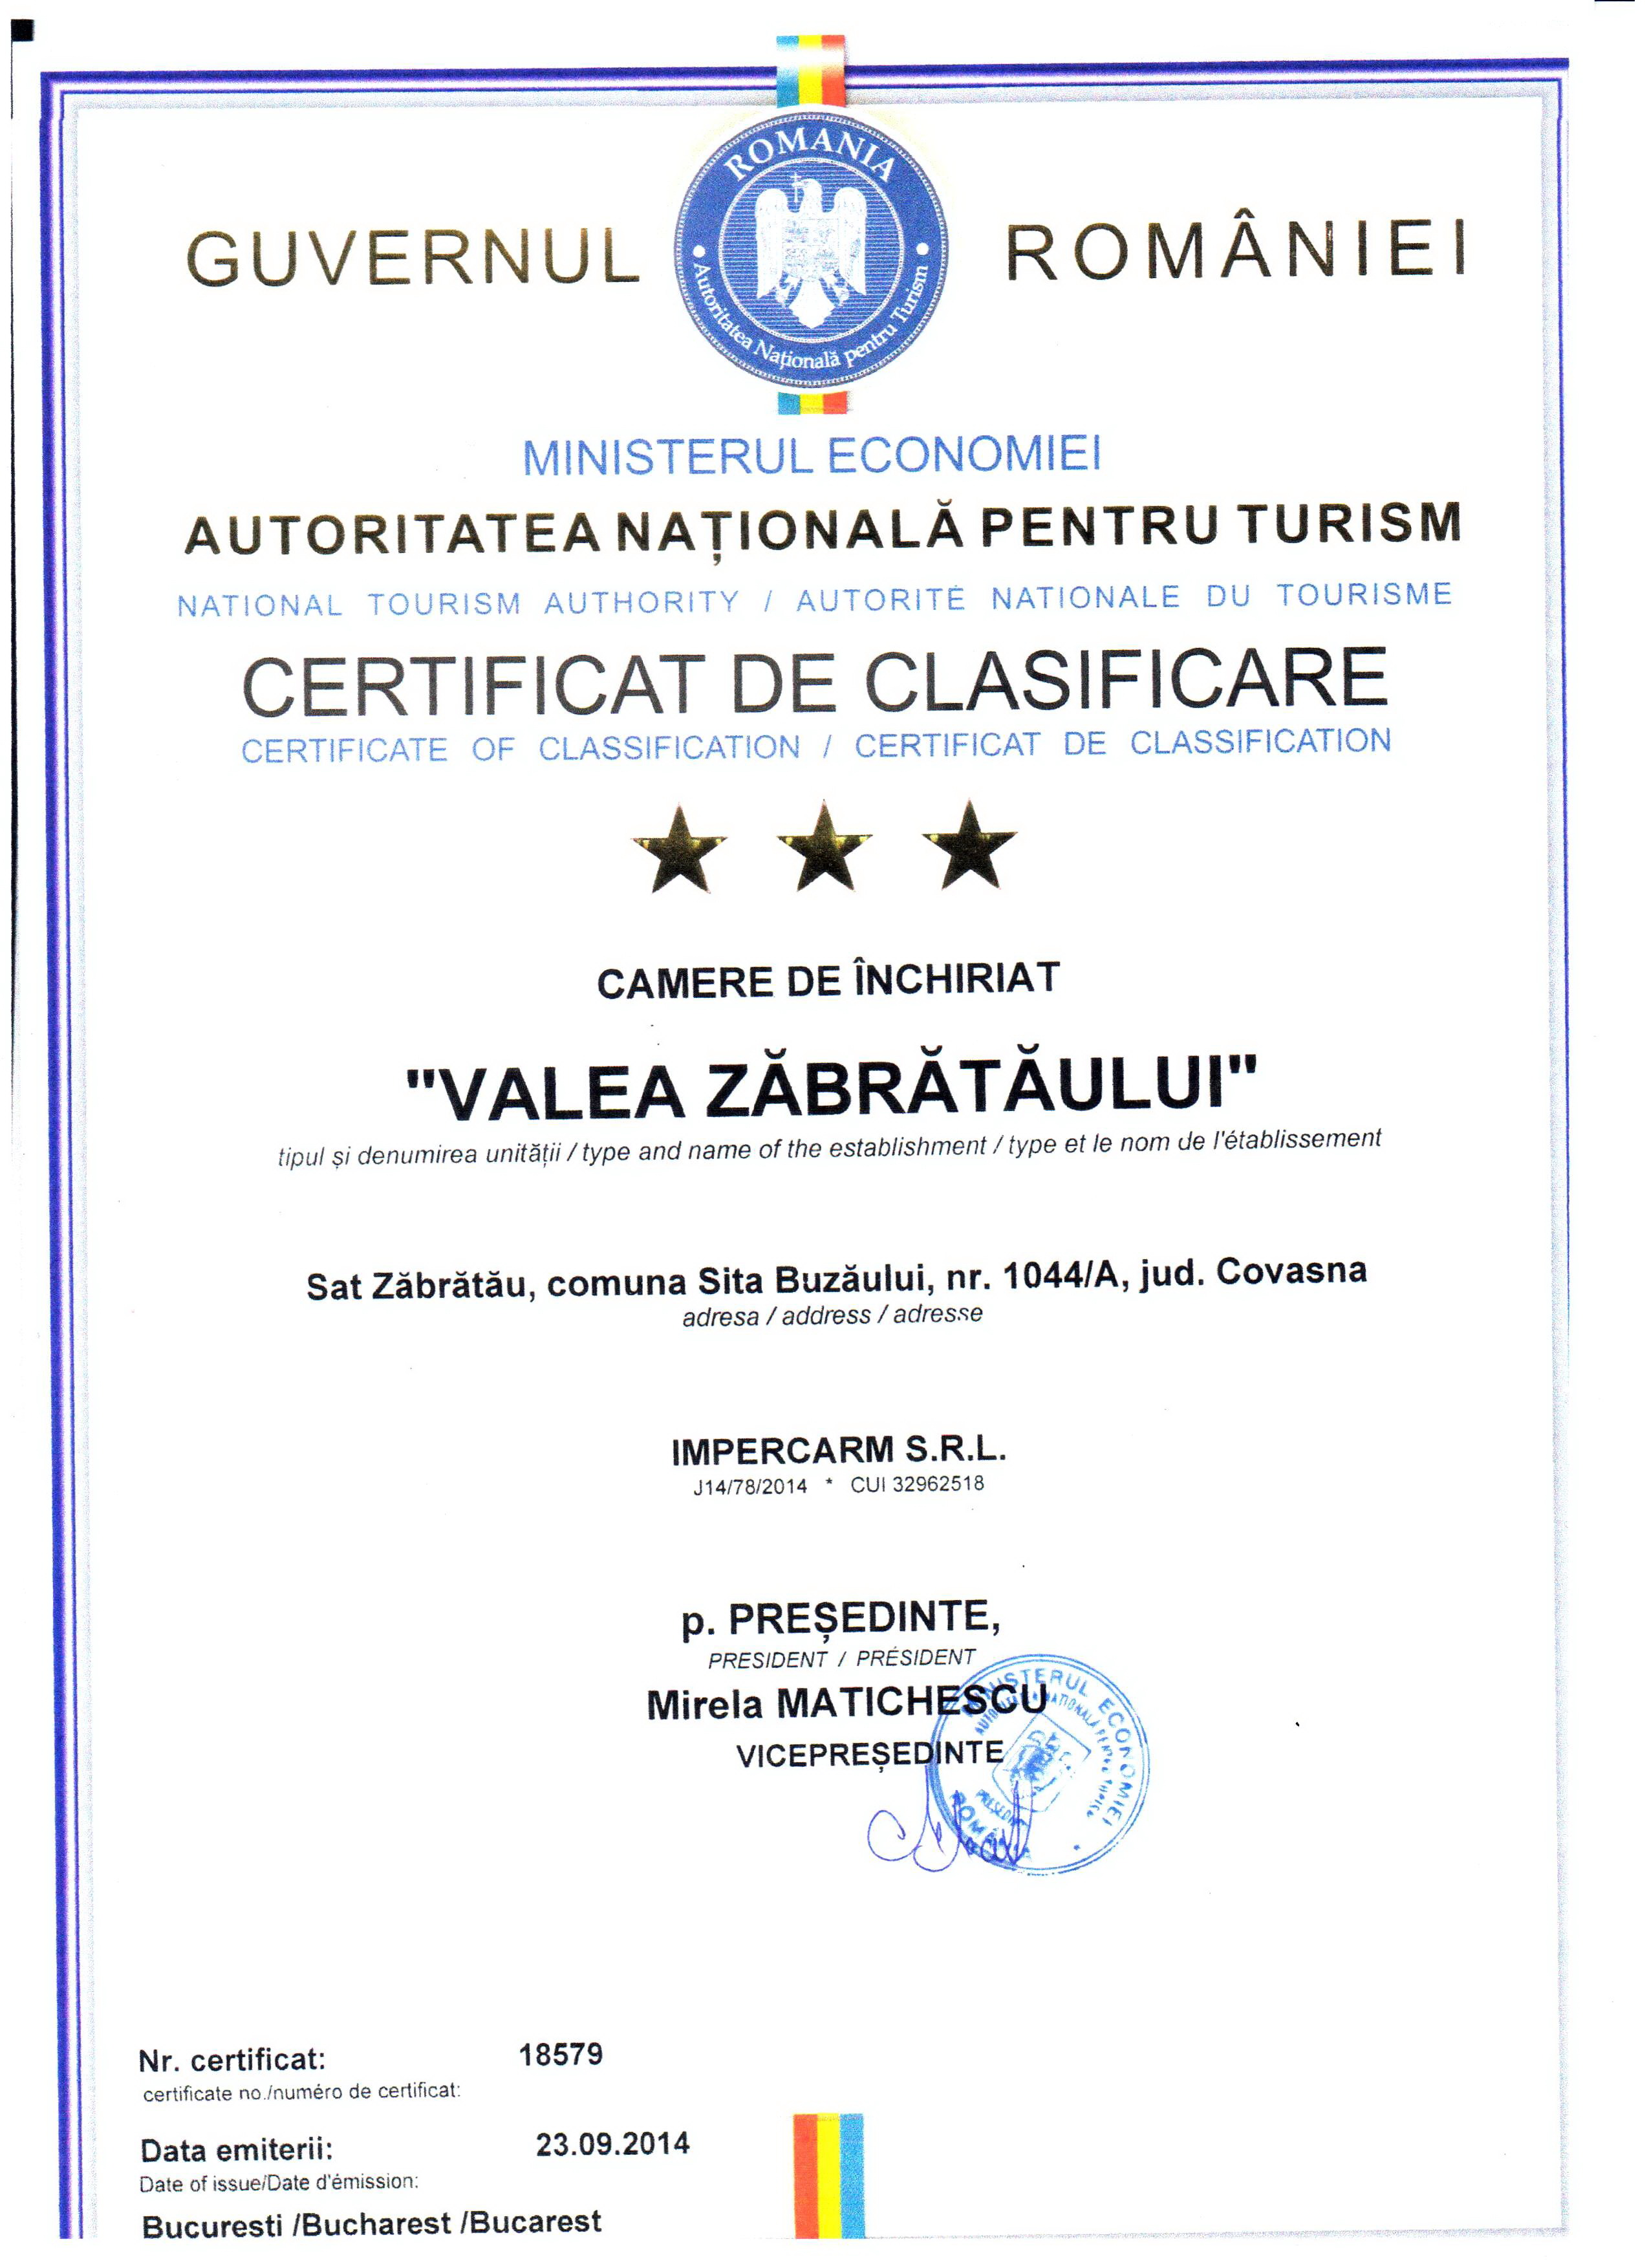 Certificat de clasificare turistica